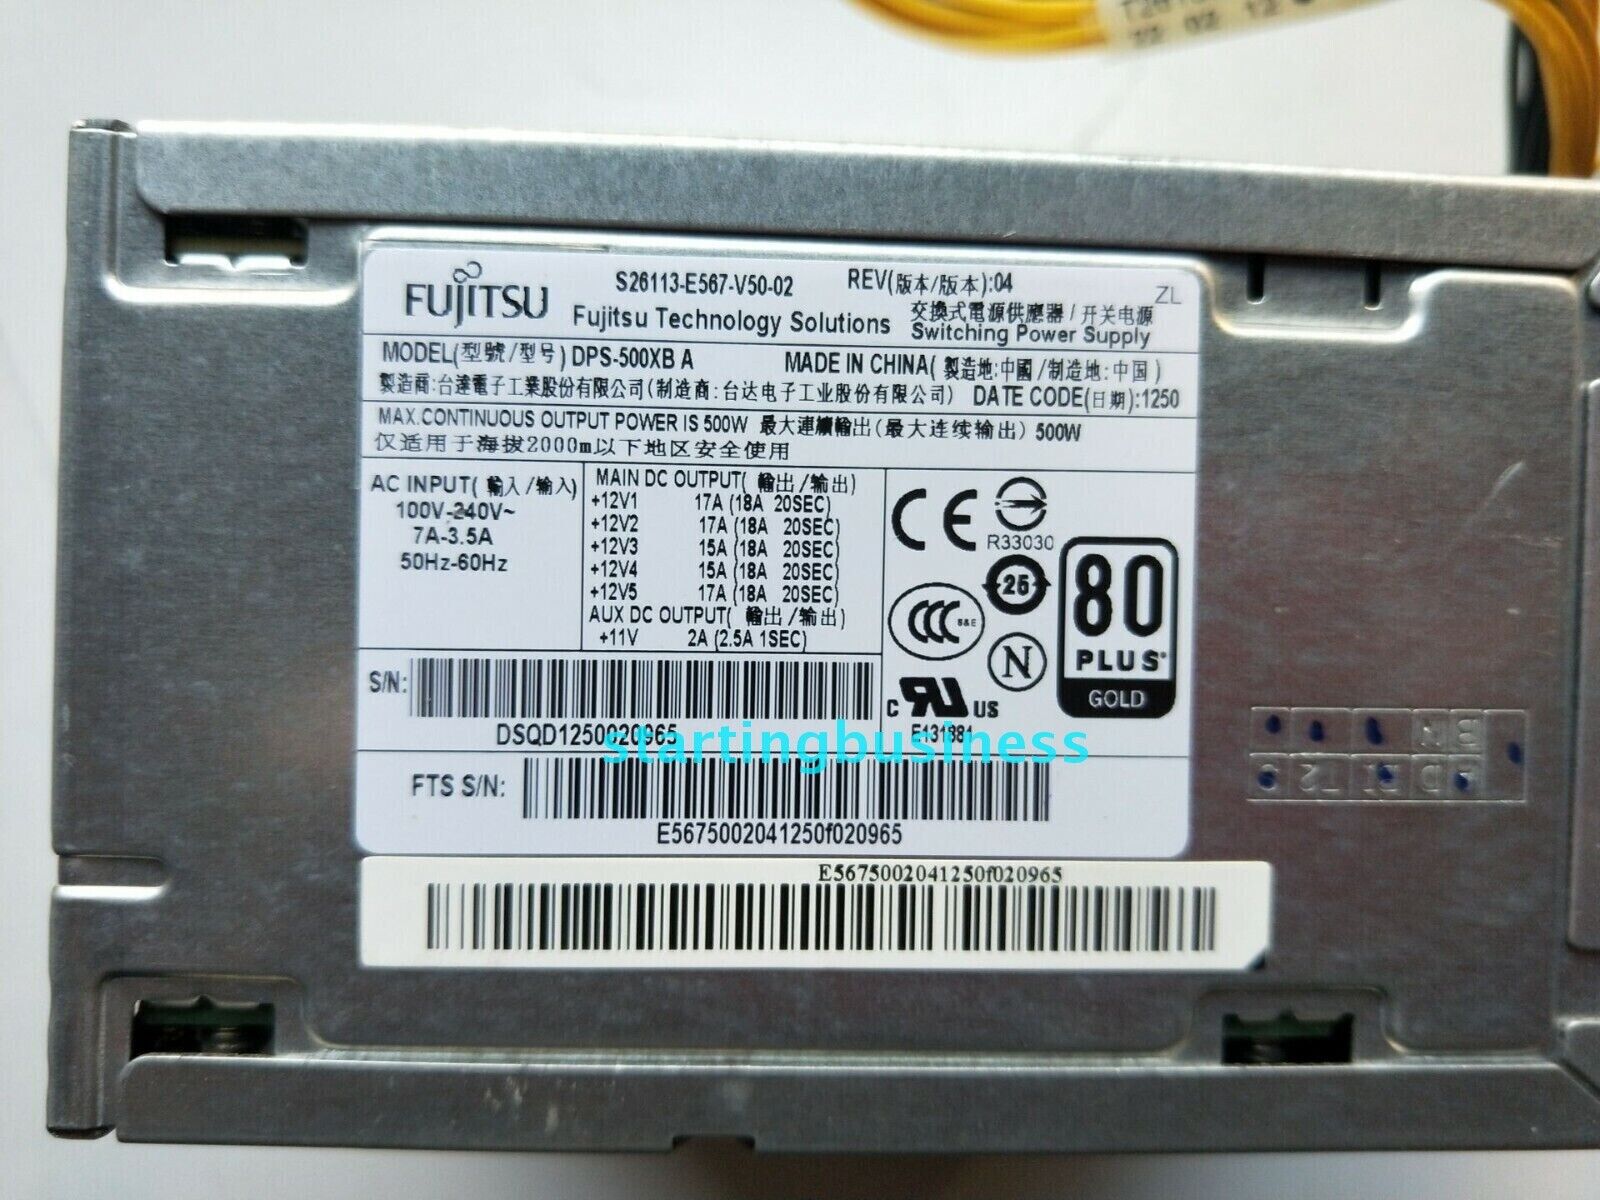 1PC Original Fujitsu S26113-E567-V50-02 DPS-500XB A server power supply 500W